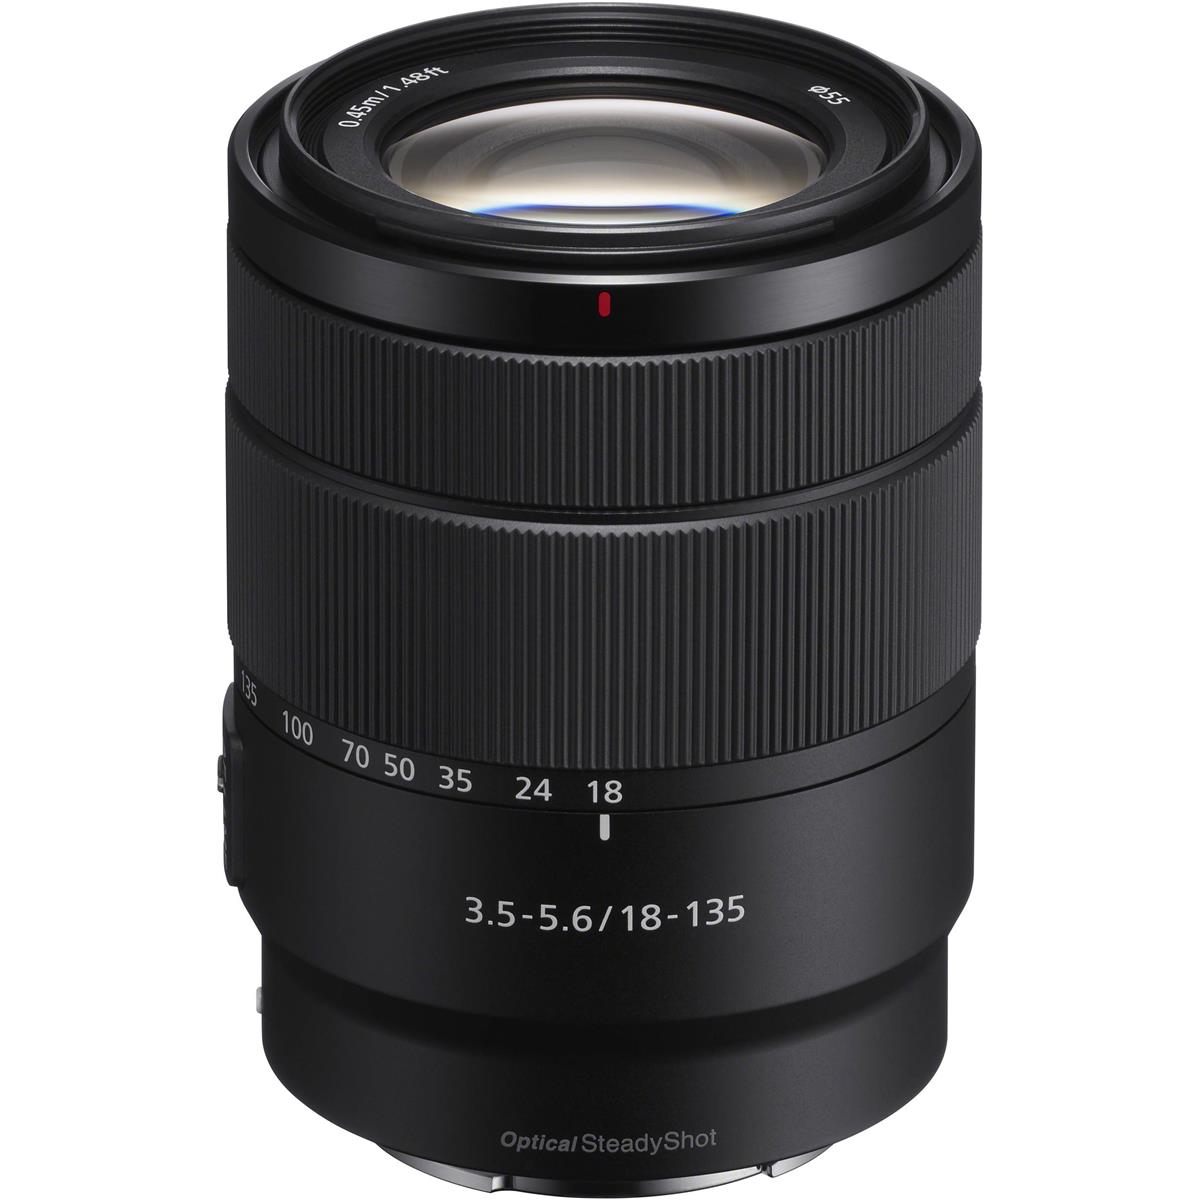 Image of Sony E 18-135mm f/3.5-5.6 OSS Lens for Sony E